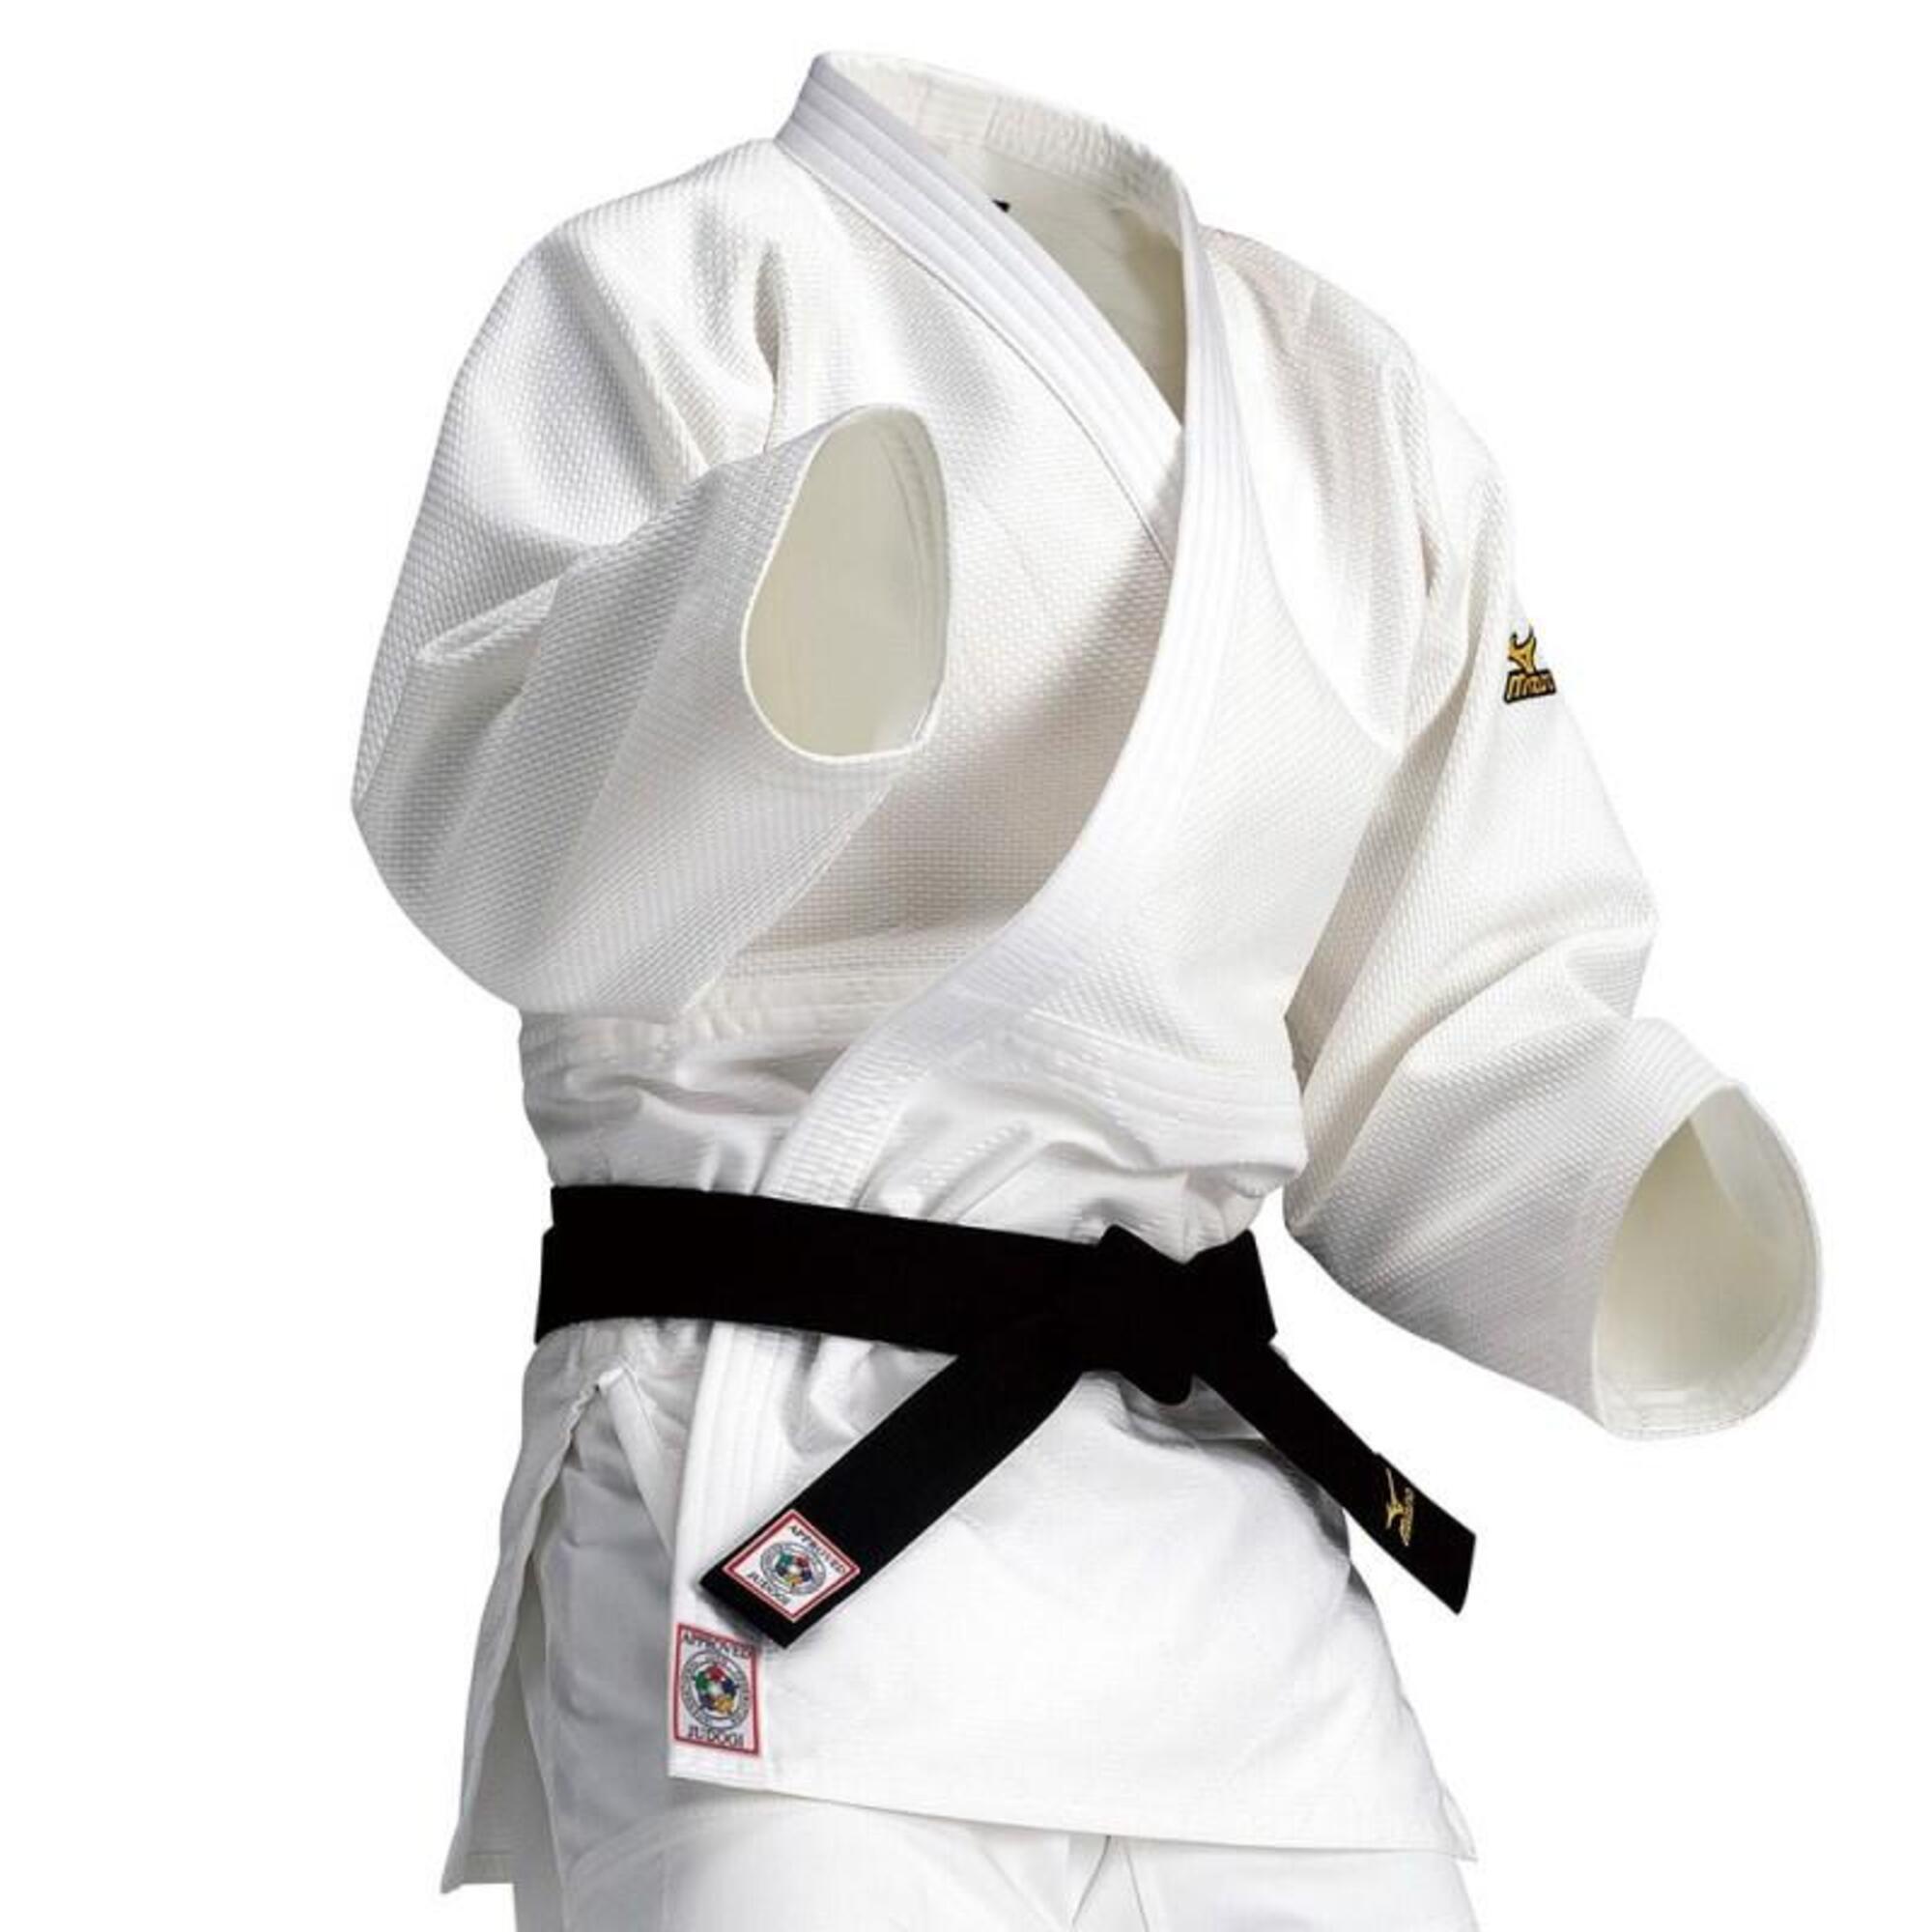 Judopak Mizuno Yusho FIJ 2015 750g